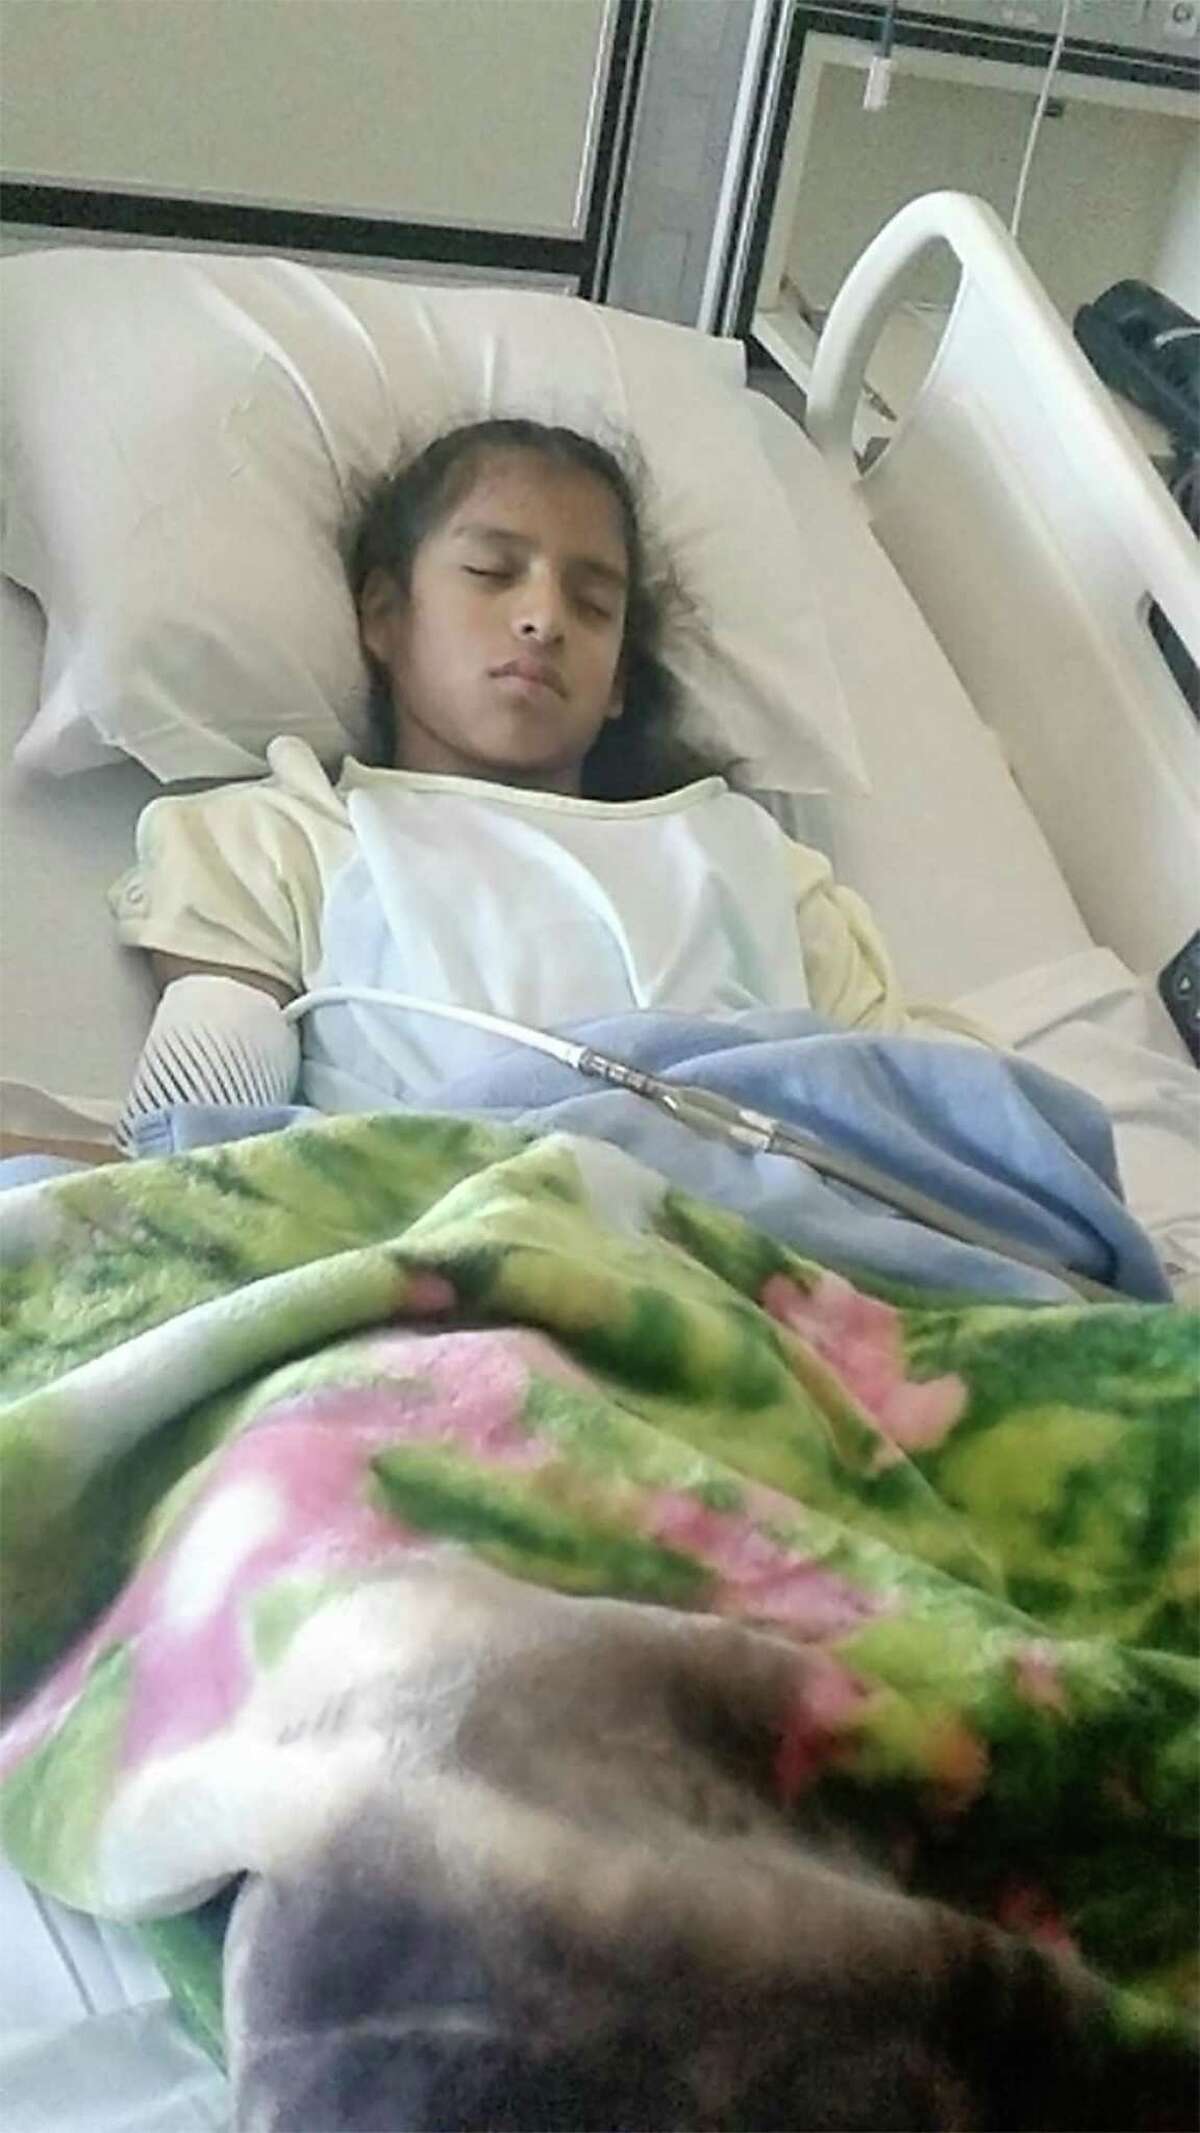 Rosemarie Hernández, de 10 años, yace en una cama de hospital en Corpus Christi después de someterse a una cirugía de vesícula biliar. Hernández no tiene estatus de inmigrante legal y podría ser enviada a un centro de detención después de ser dada de alta del hospital. Hernández fue diagnosticada con parálisis cerebral.